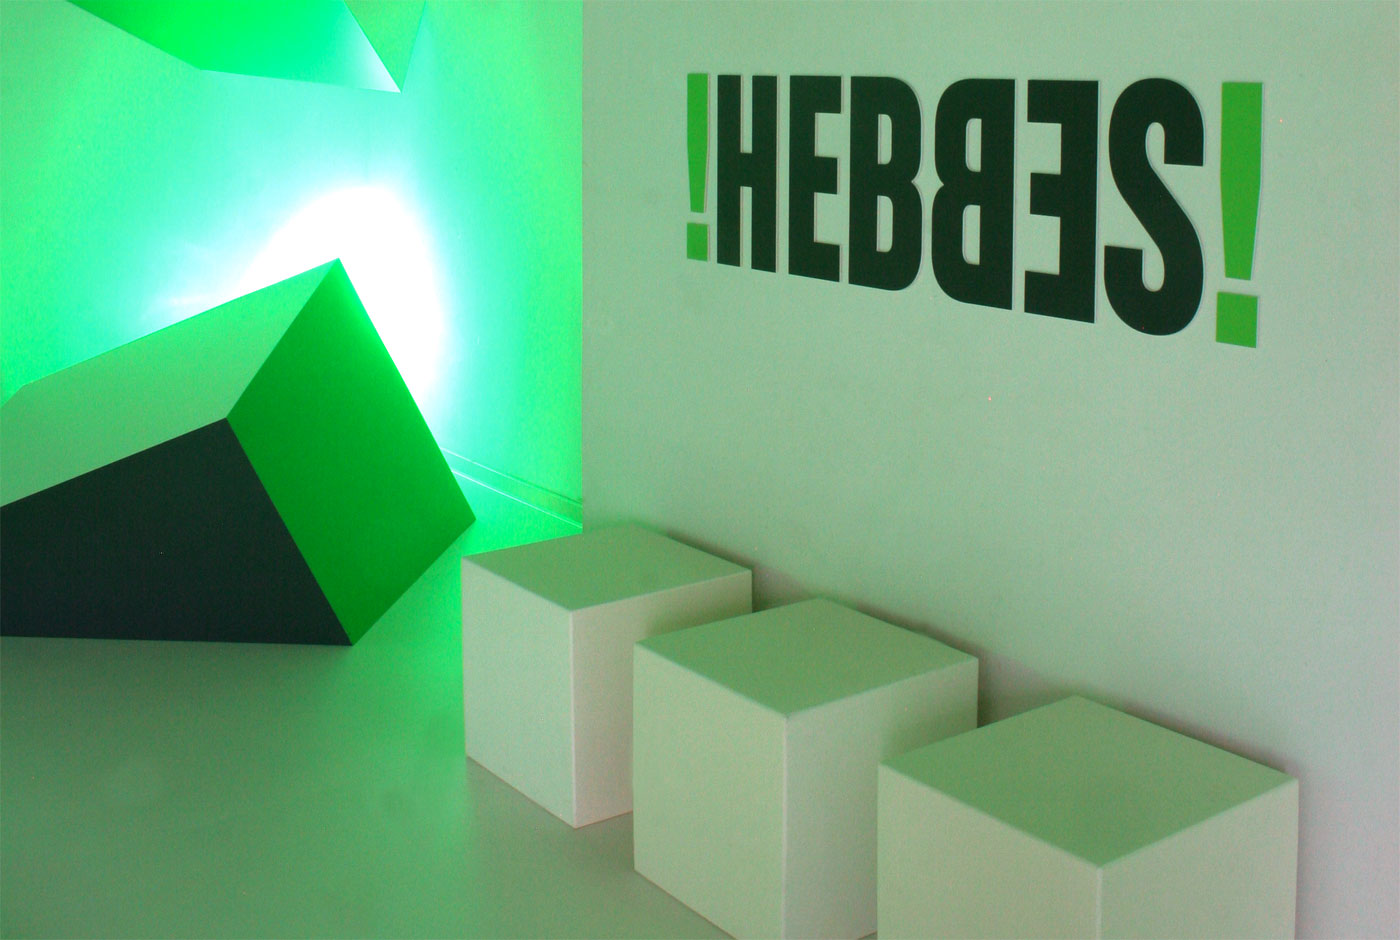 Hebbes Exhibition